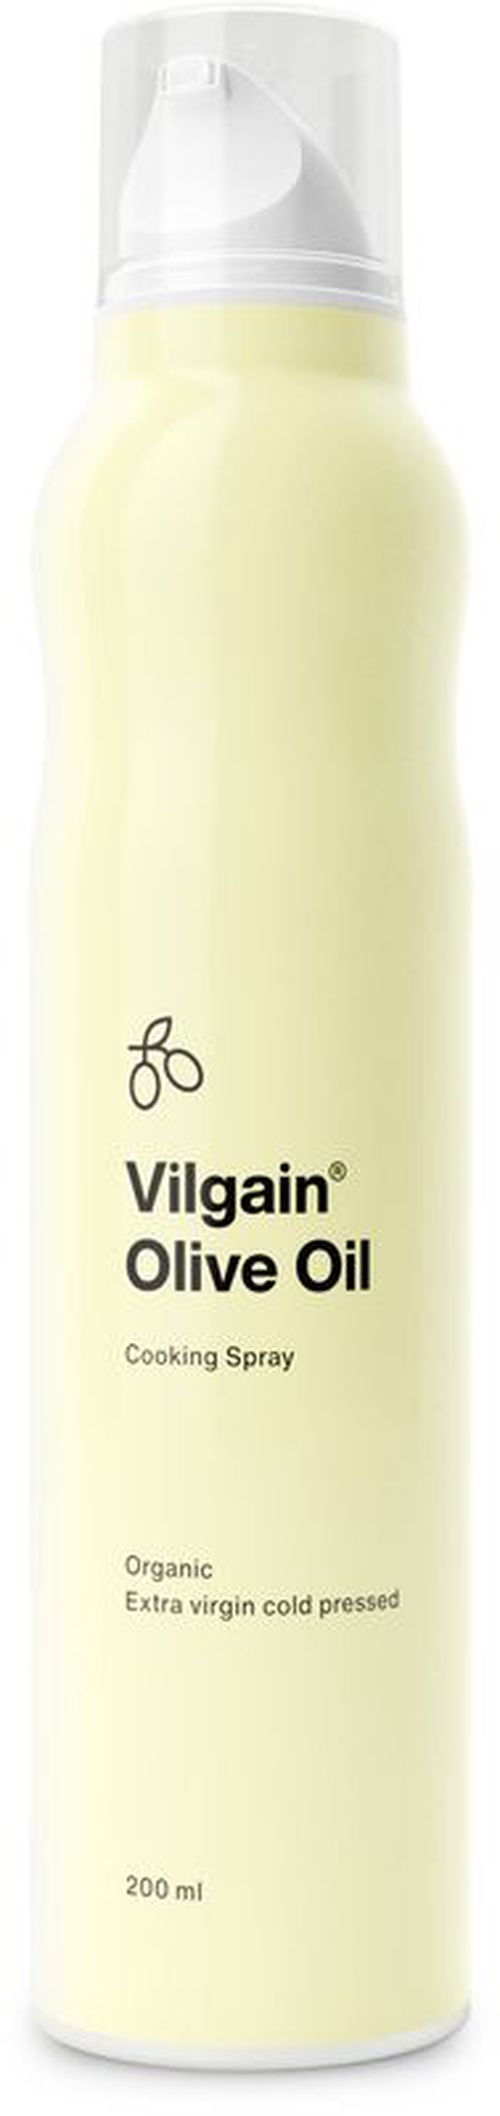 Vilgain Olivový olej v spreji 200 ml